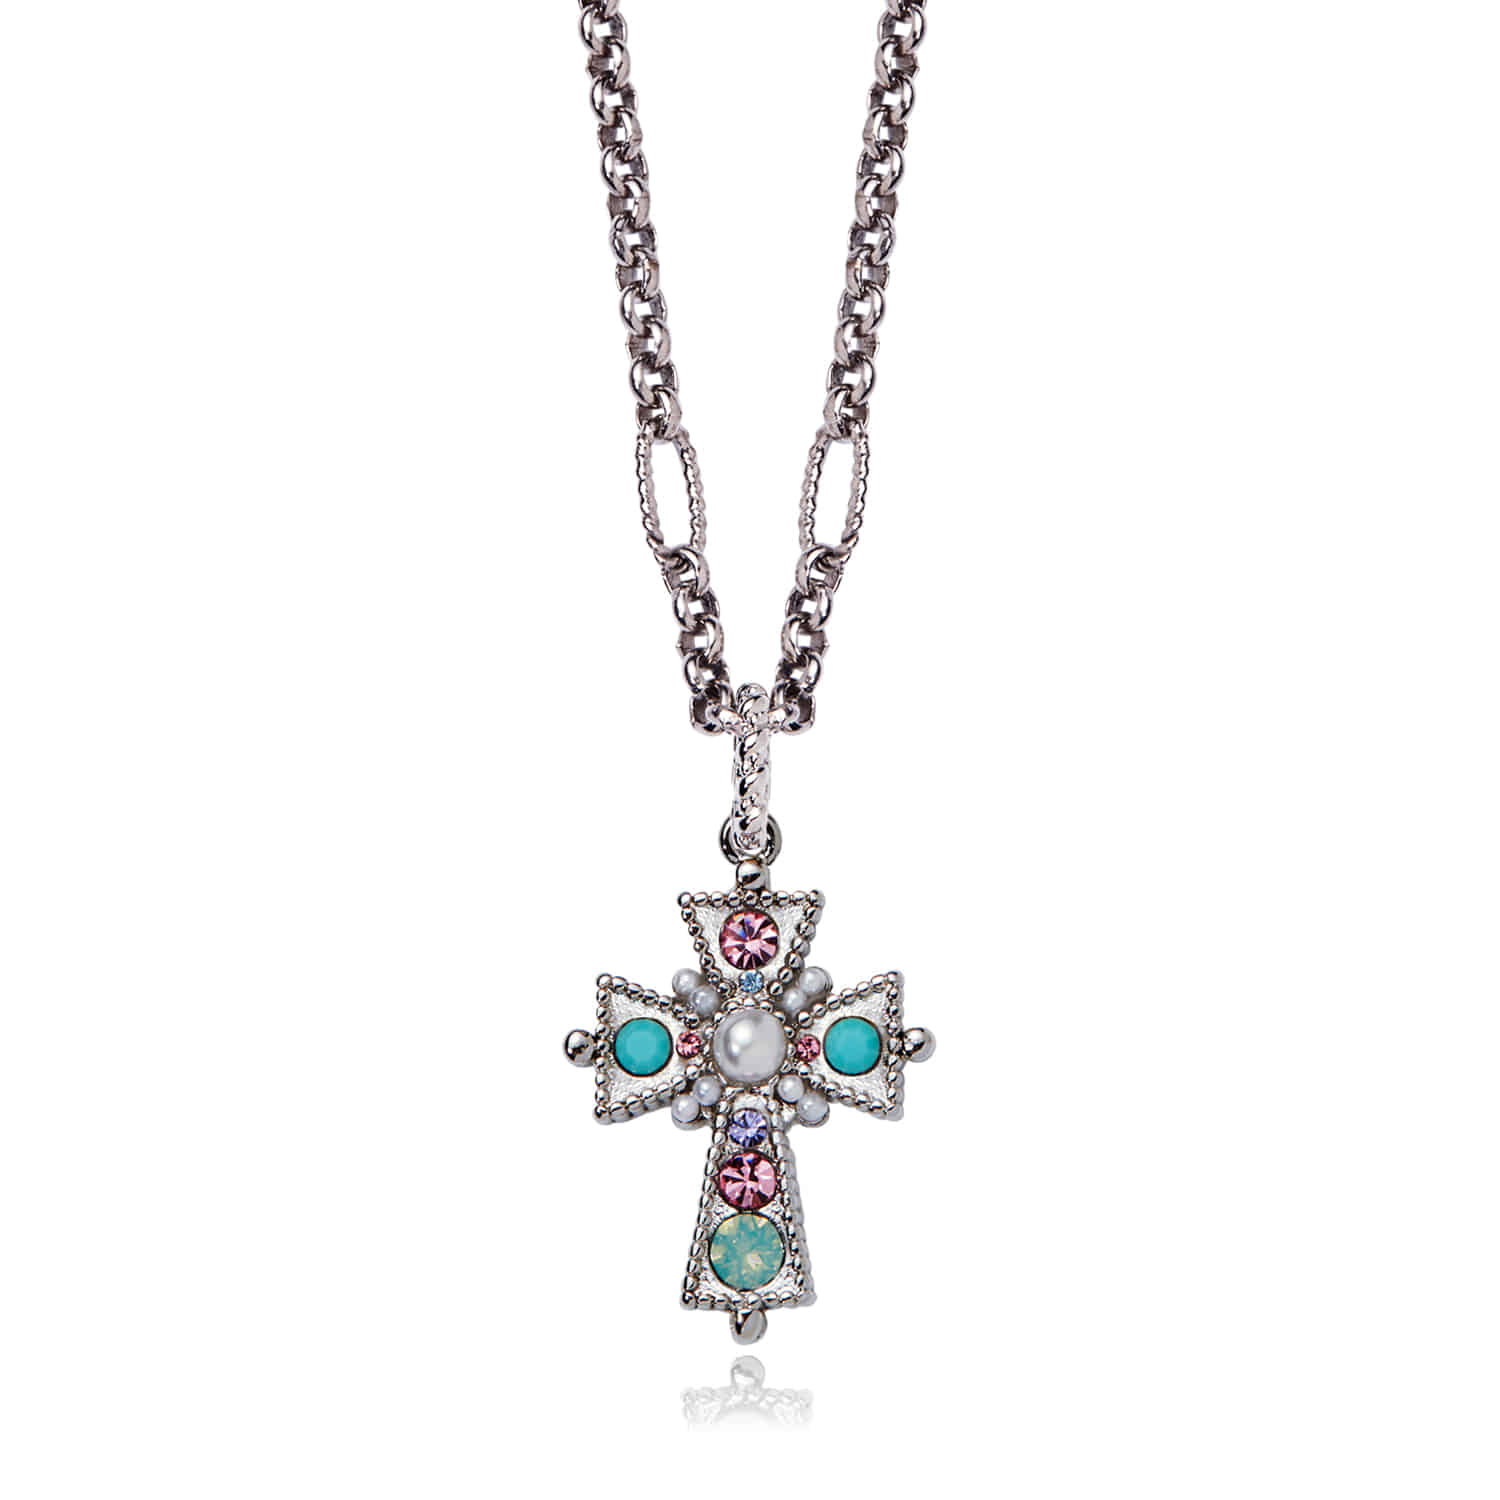 Jewel Cross Pendant Necklace Silver